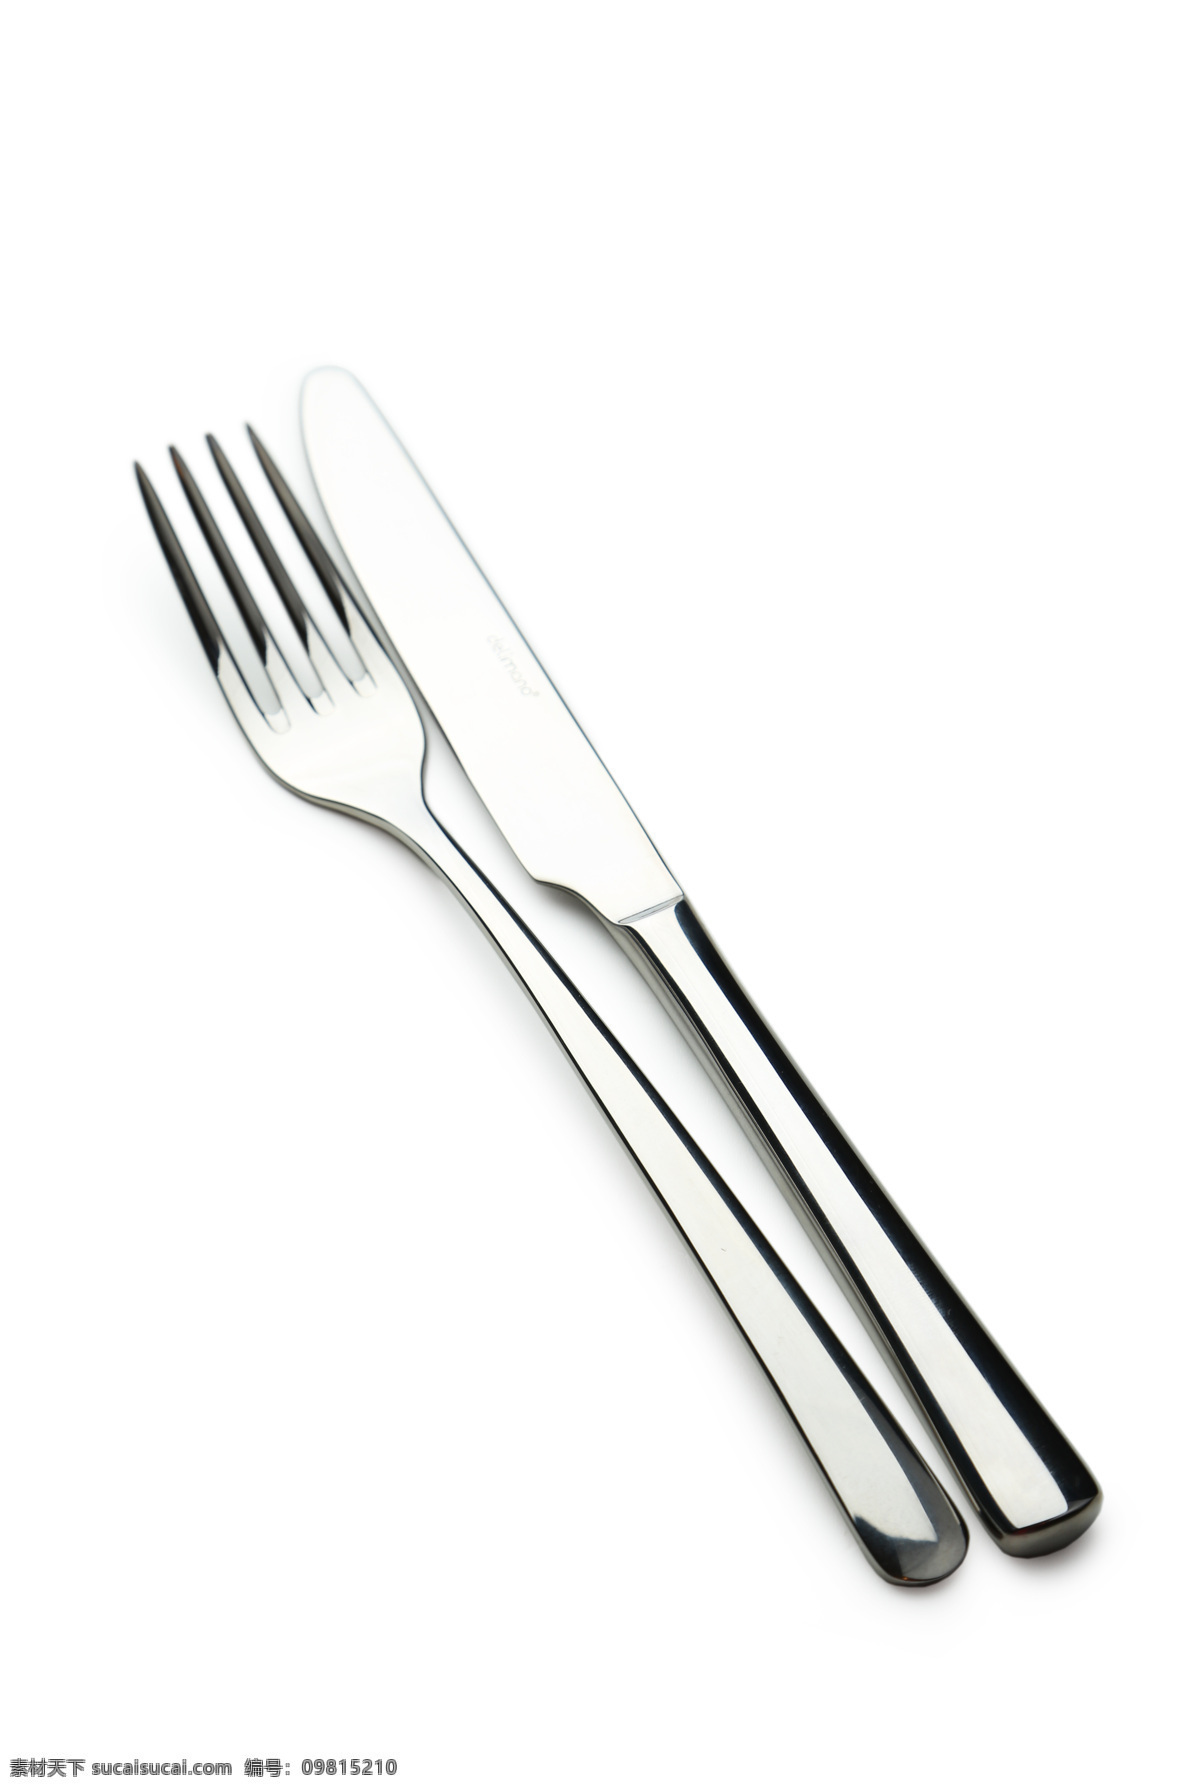 刀叉图片素材 刀叉 盘子 刀 叉 餐具 厨房用品 勺子 生活用品 餐具厨具 餐饮美食